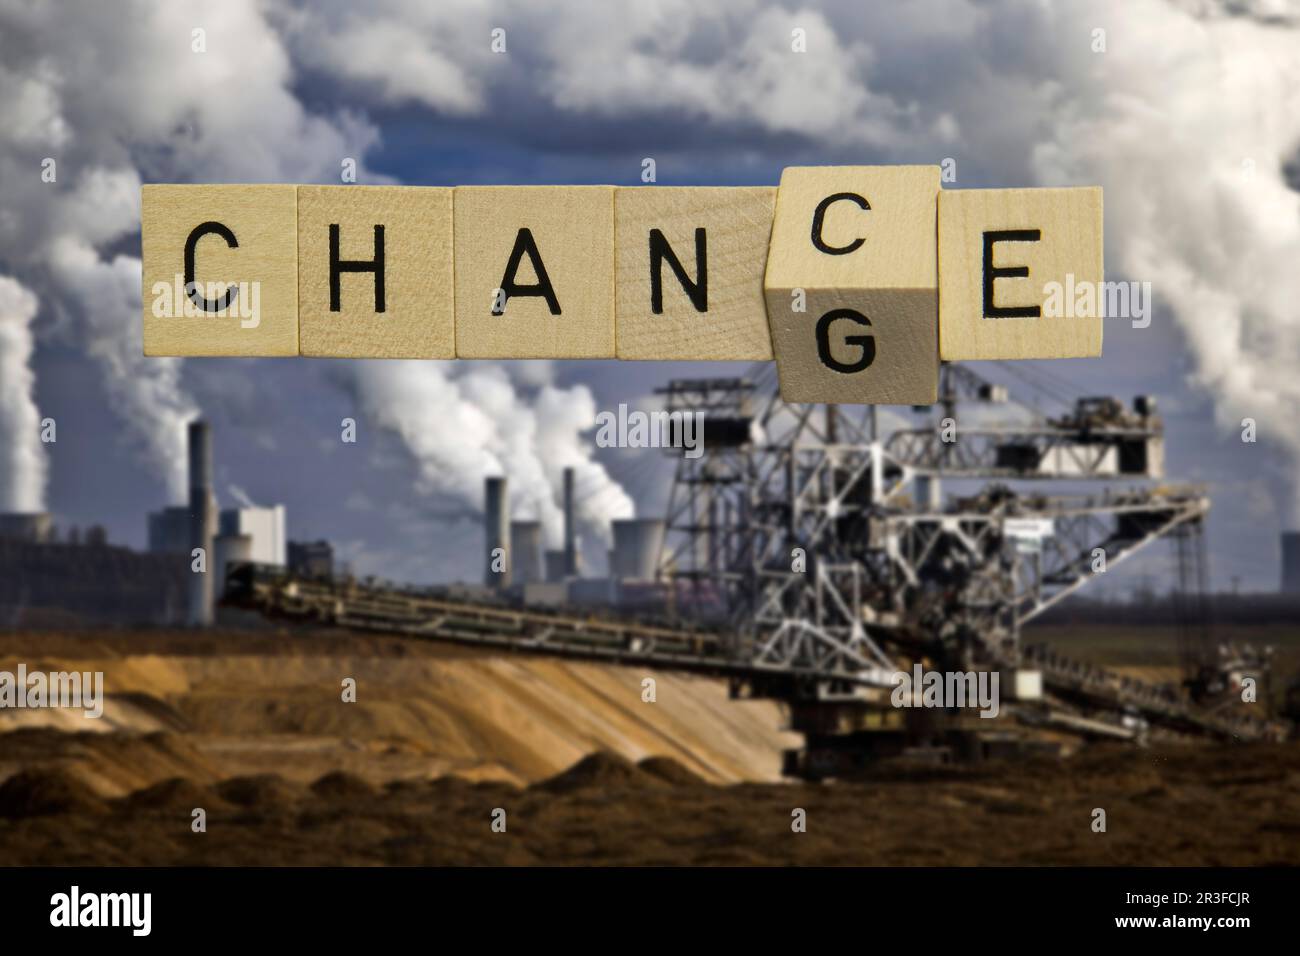 Chance ou changement, image symbolique, changement de politique climatique et sortie de l'exploitation minière du charbon brun Banque D'Images